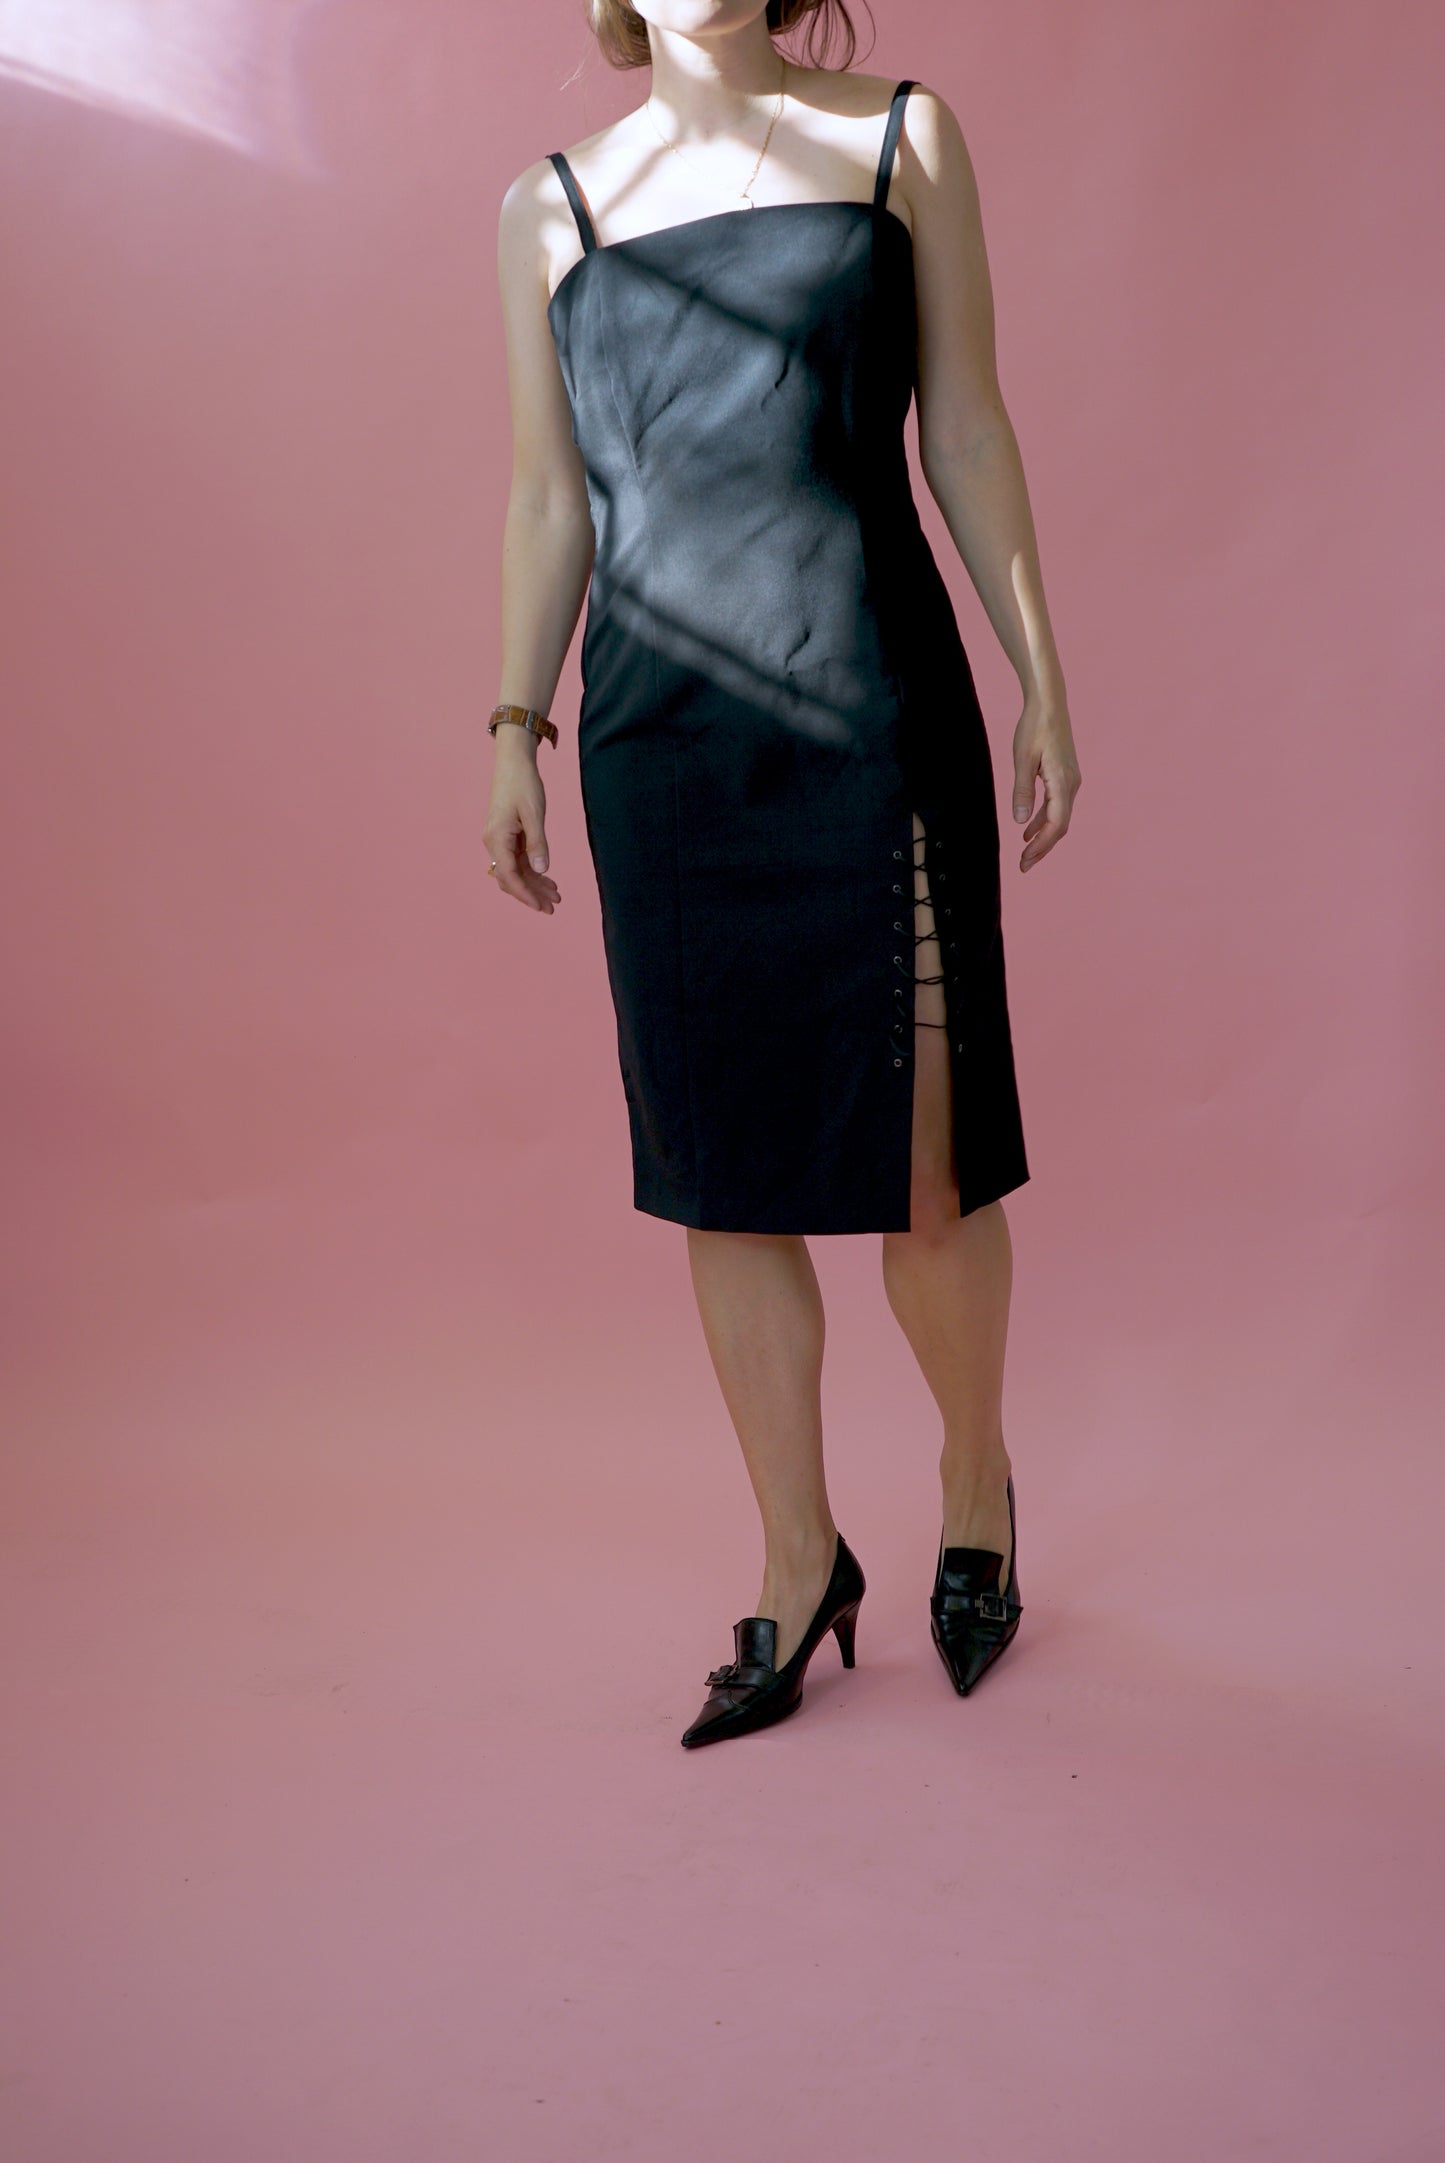 Black Vintage Midi Strap Dress Slit Stretchy Pencil Dress UK Size 14-16/ EU 42-44 Size L